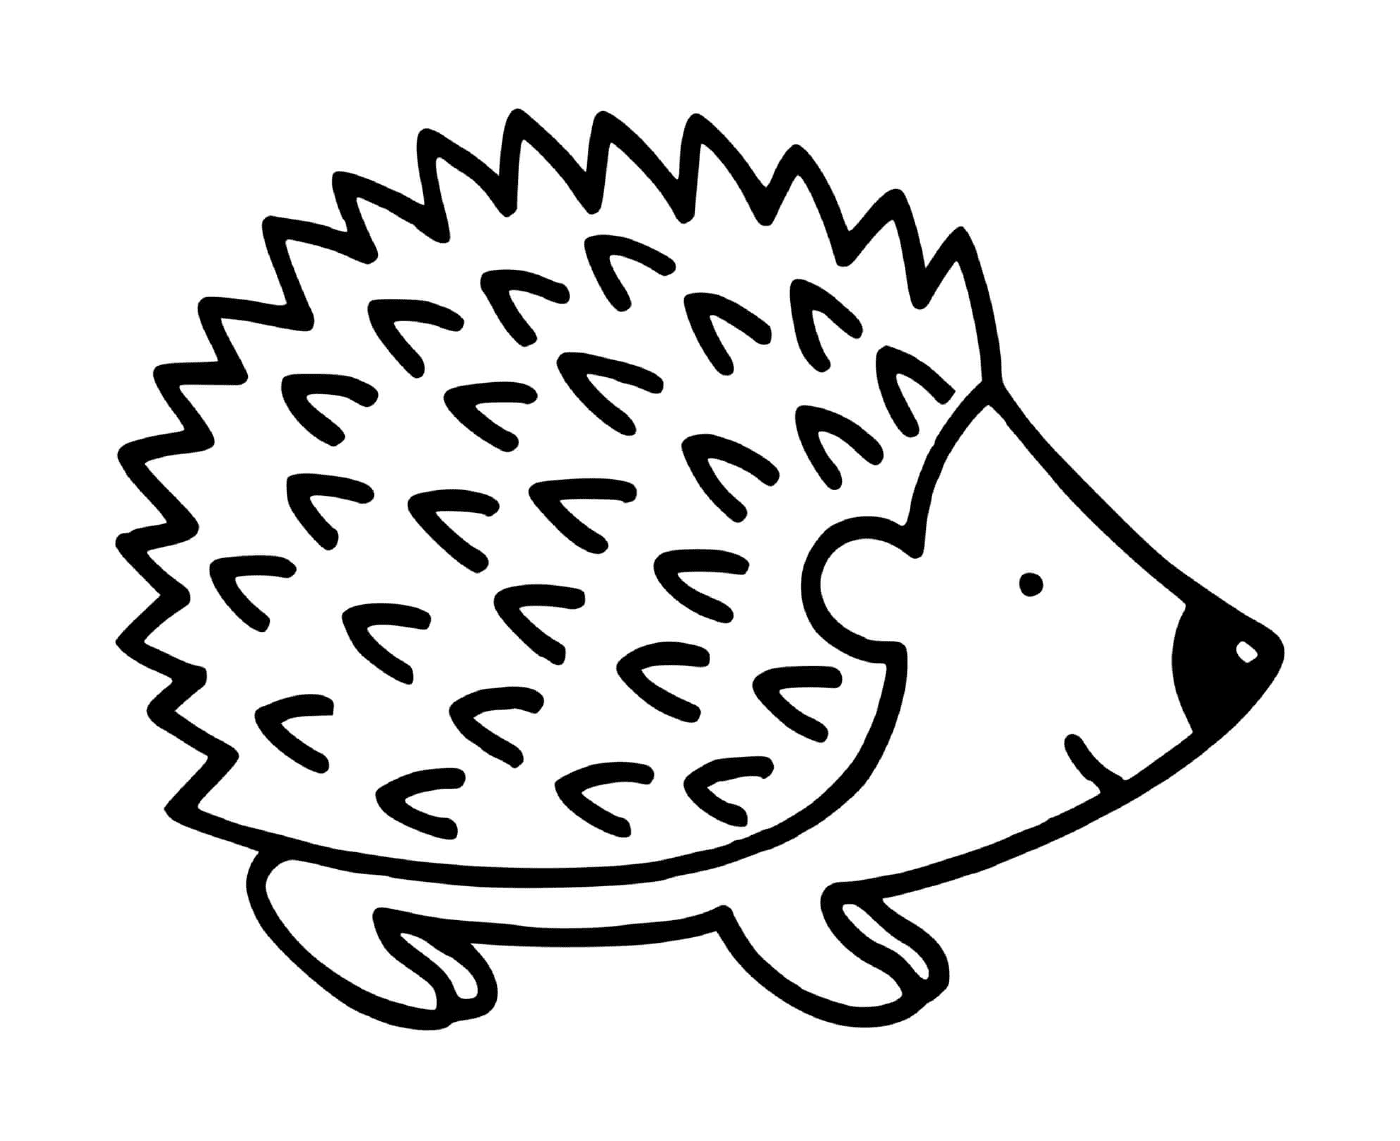  Small porcupine hedgehog 